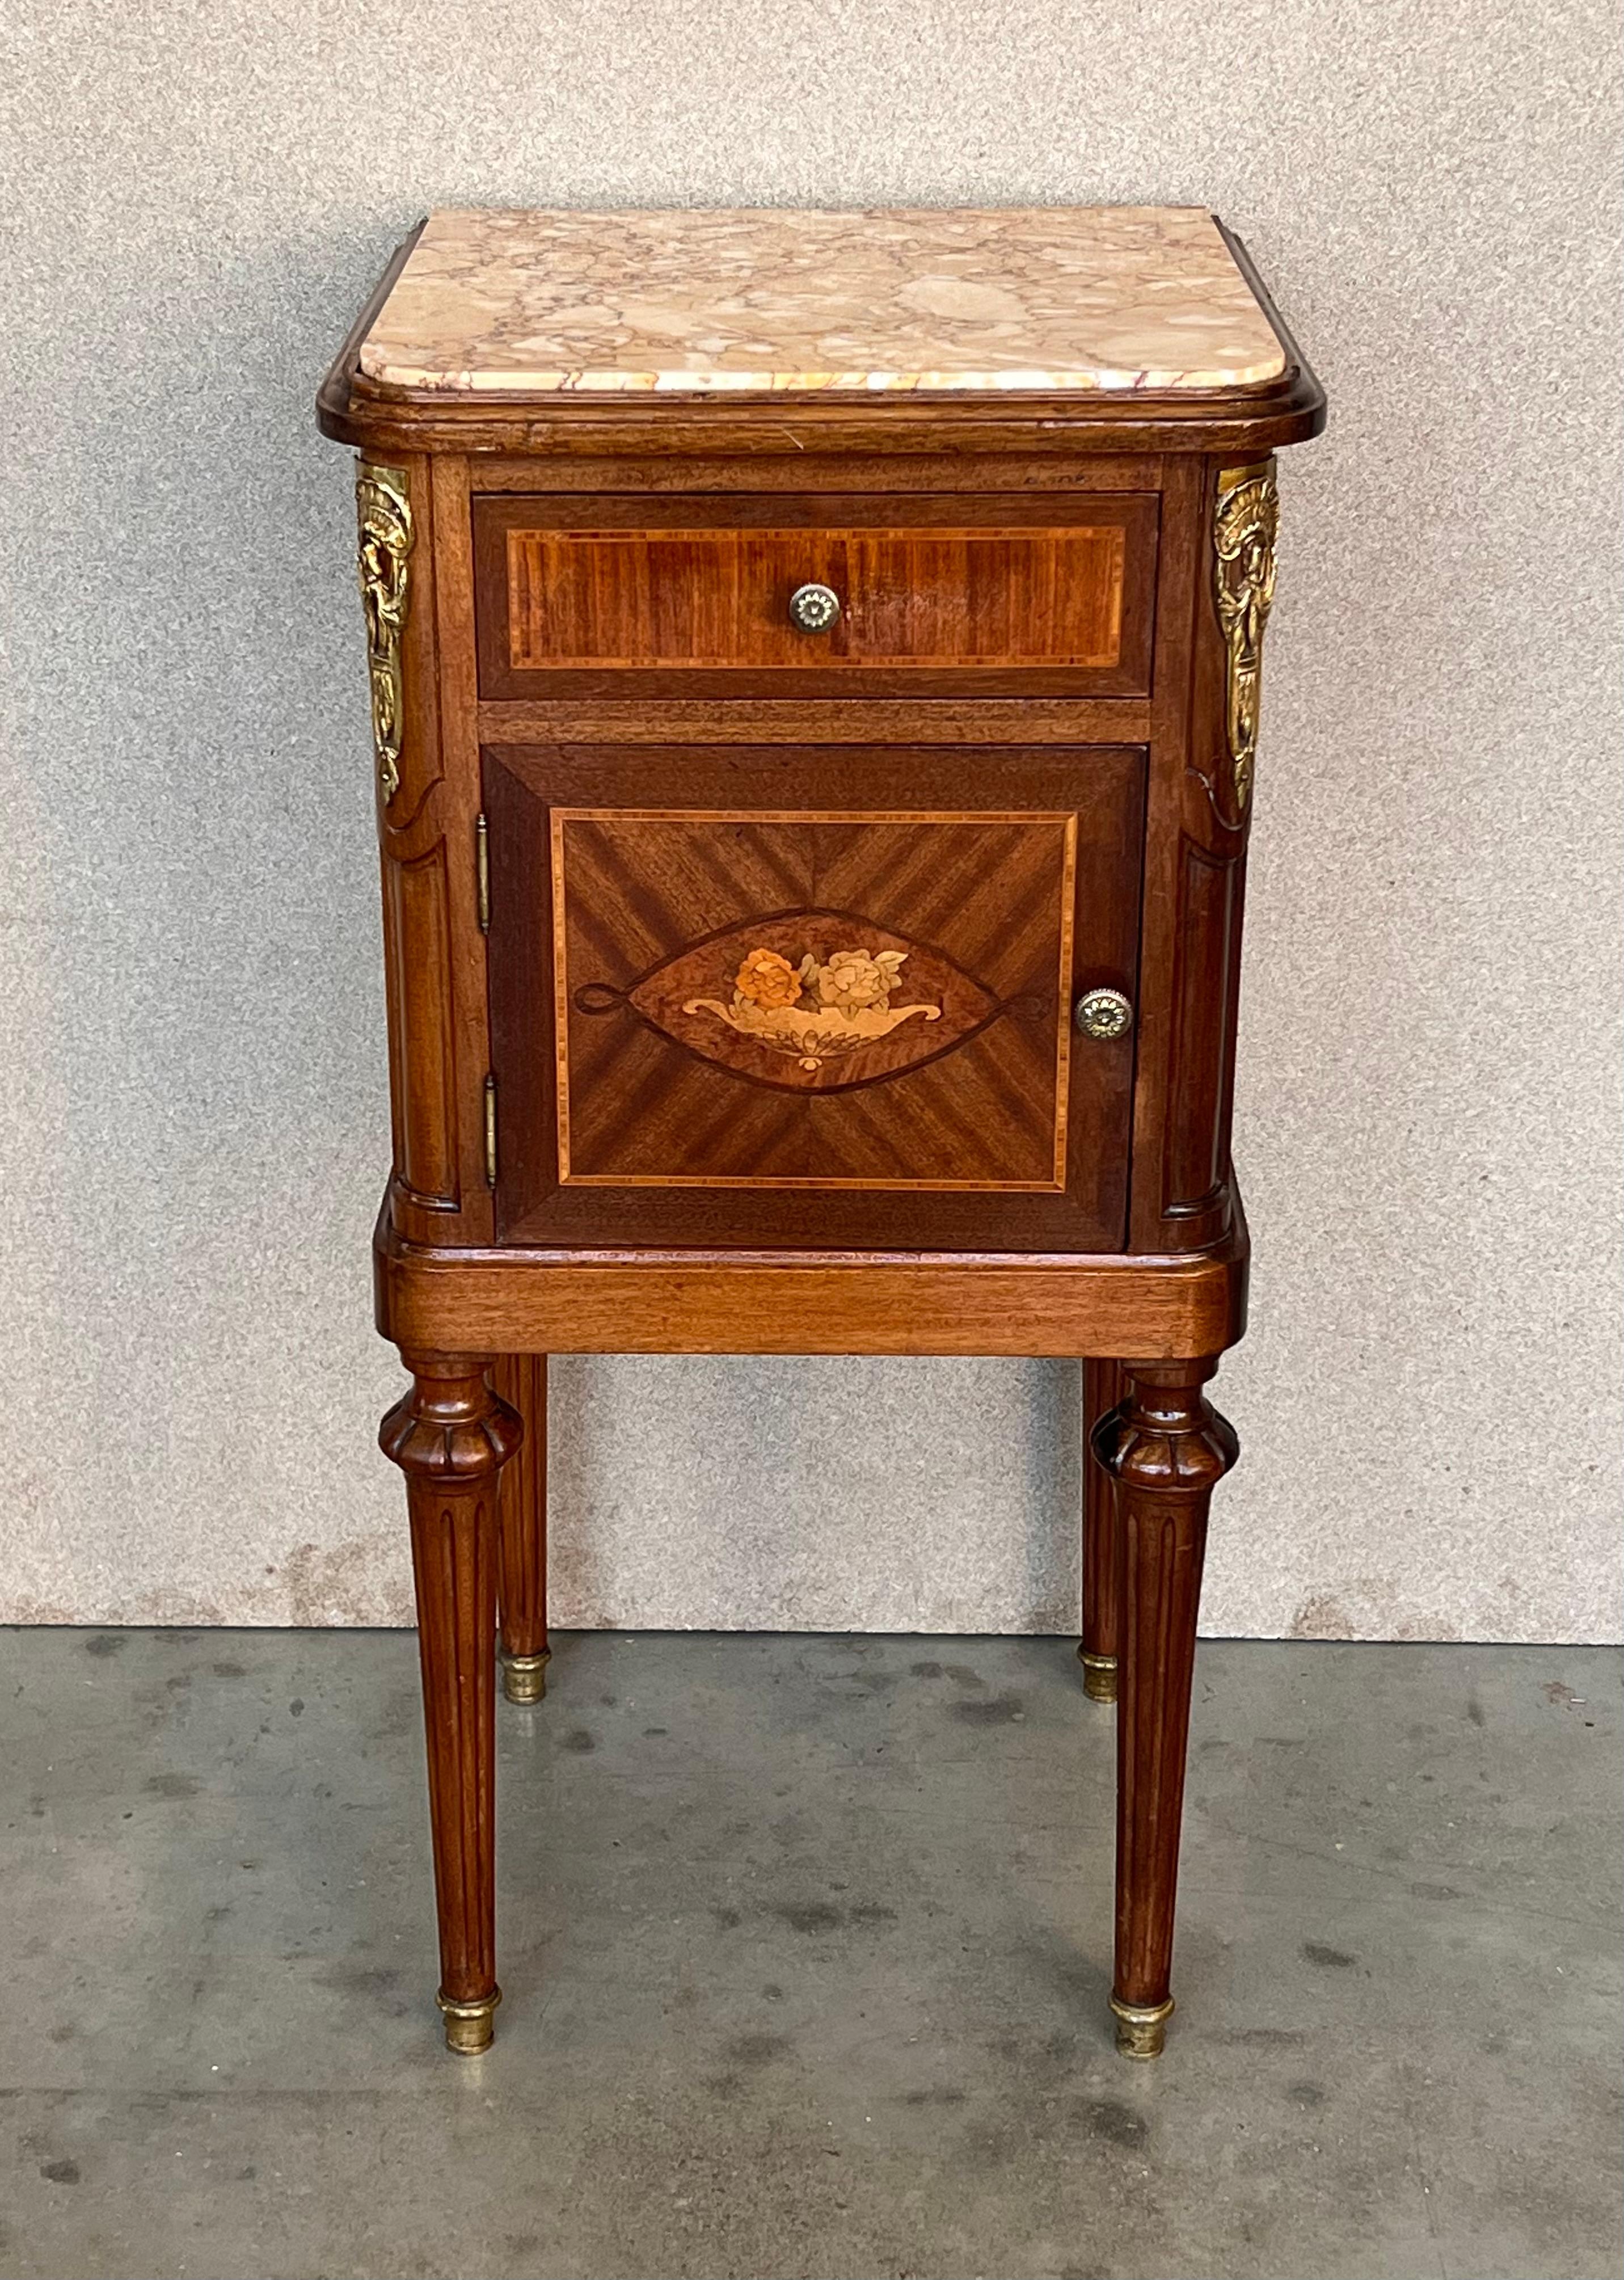 Eine seltene und beeindruckende Französisch Mahagoni Parkett Nachttisch im Stil wichtig 19. Jahrhundert ébéniste (Schreiner) Grohe Frères. Dieser prächtige Schrank aus dem dritten Viertel des 19. Jahrhunderts ist in exquisiter Handarbeit gefertigt